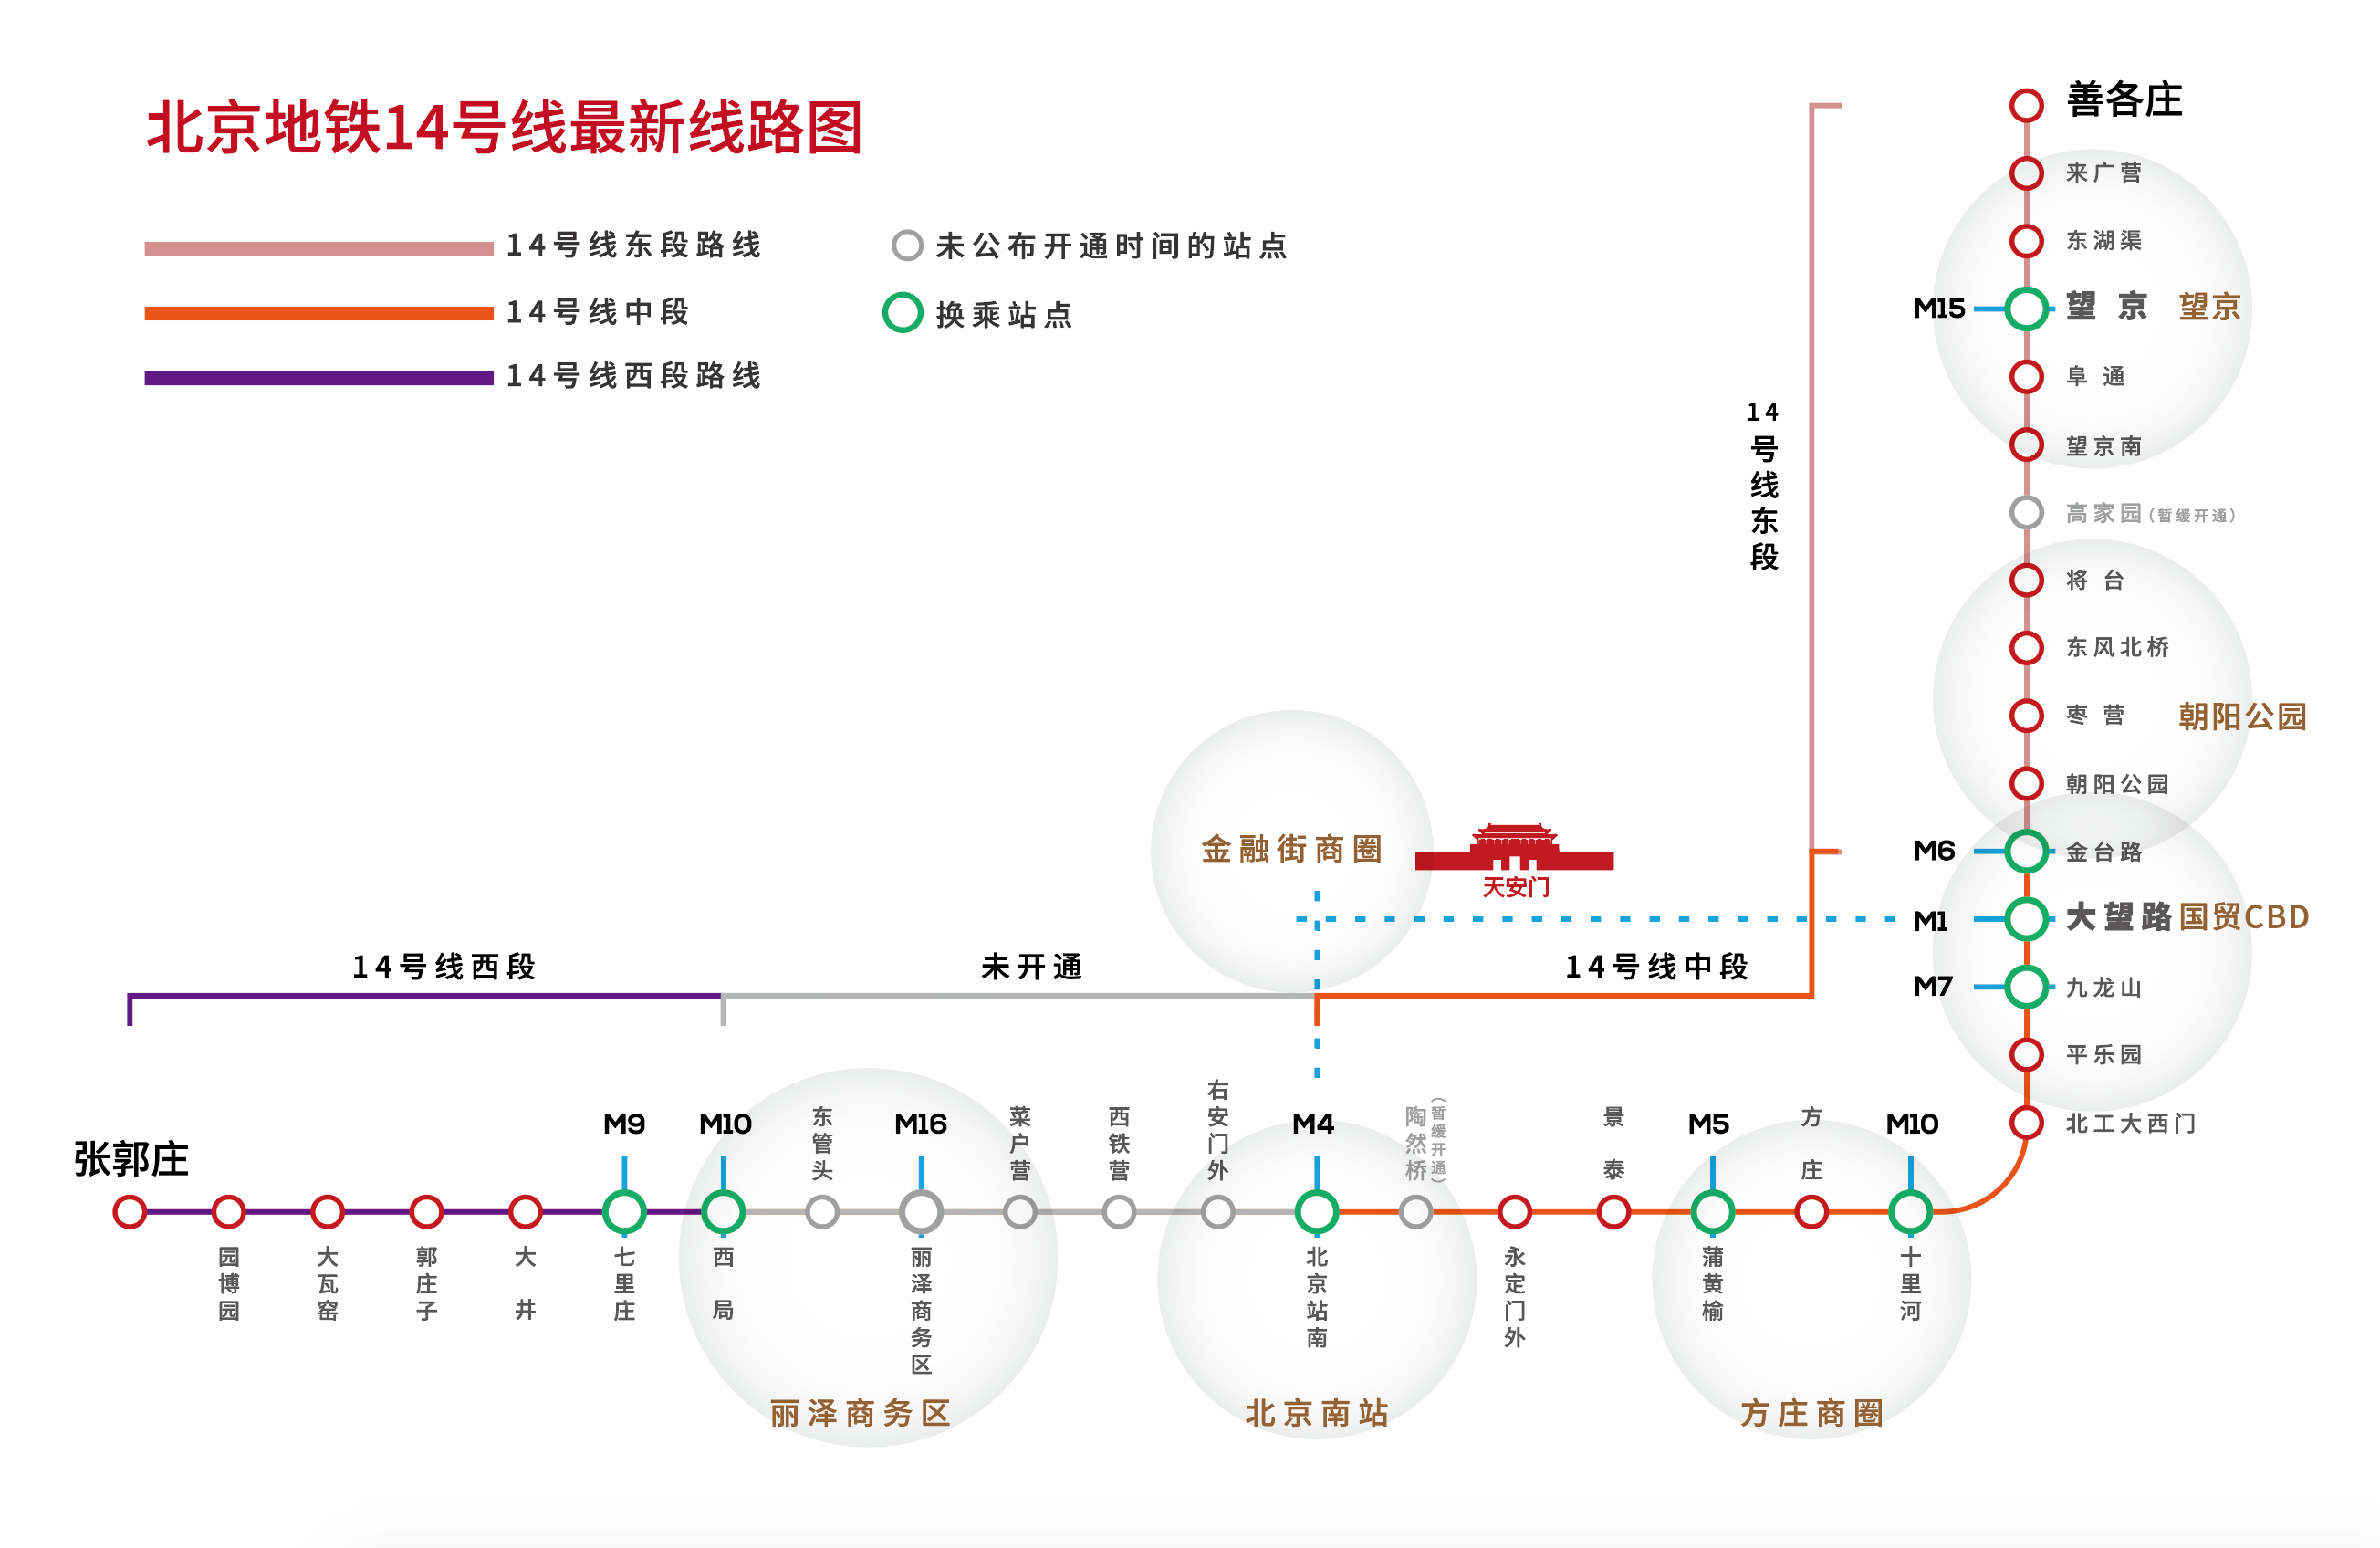 步行就到地铁口,一路不换乘20分钟内即可到达三环内,纵横北京,出行更